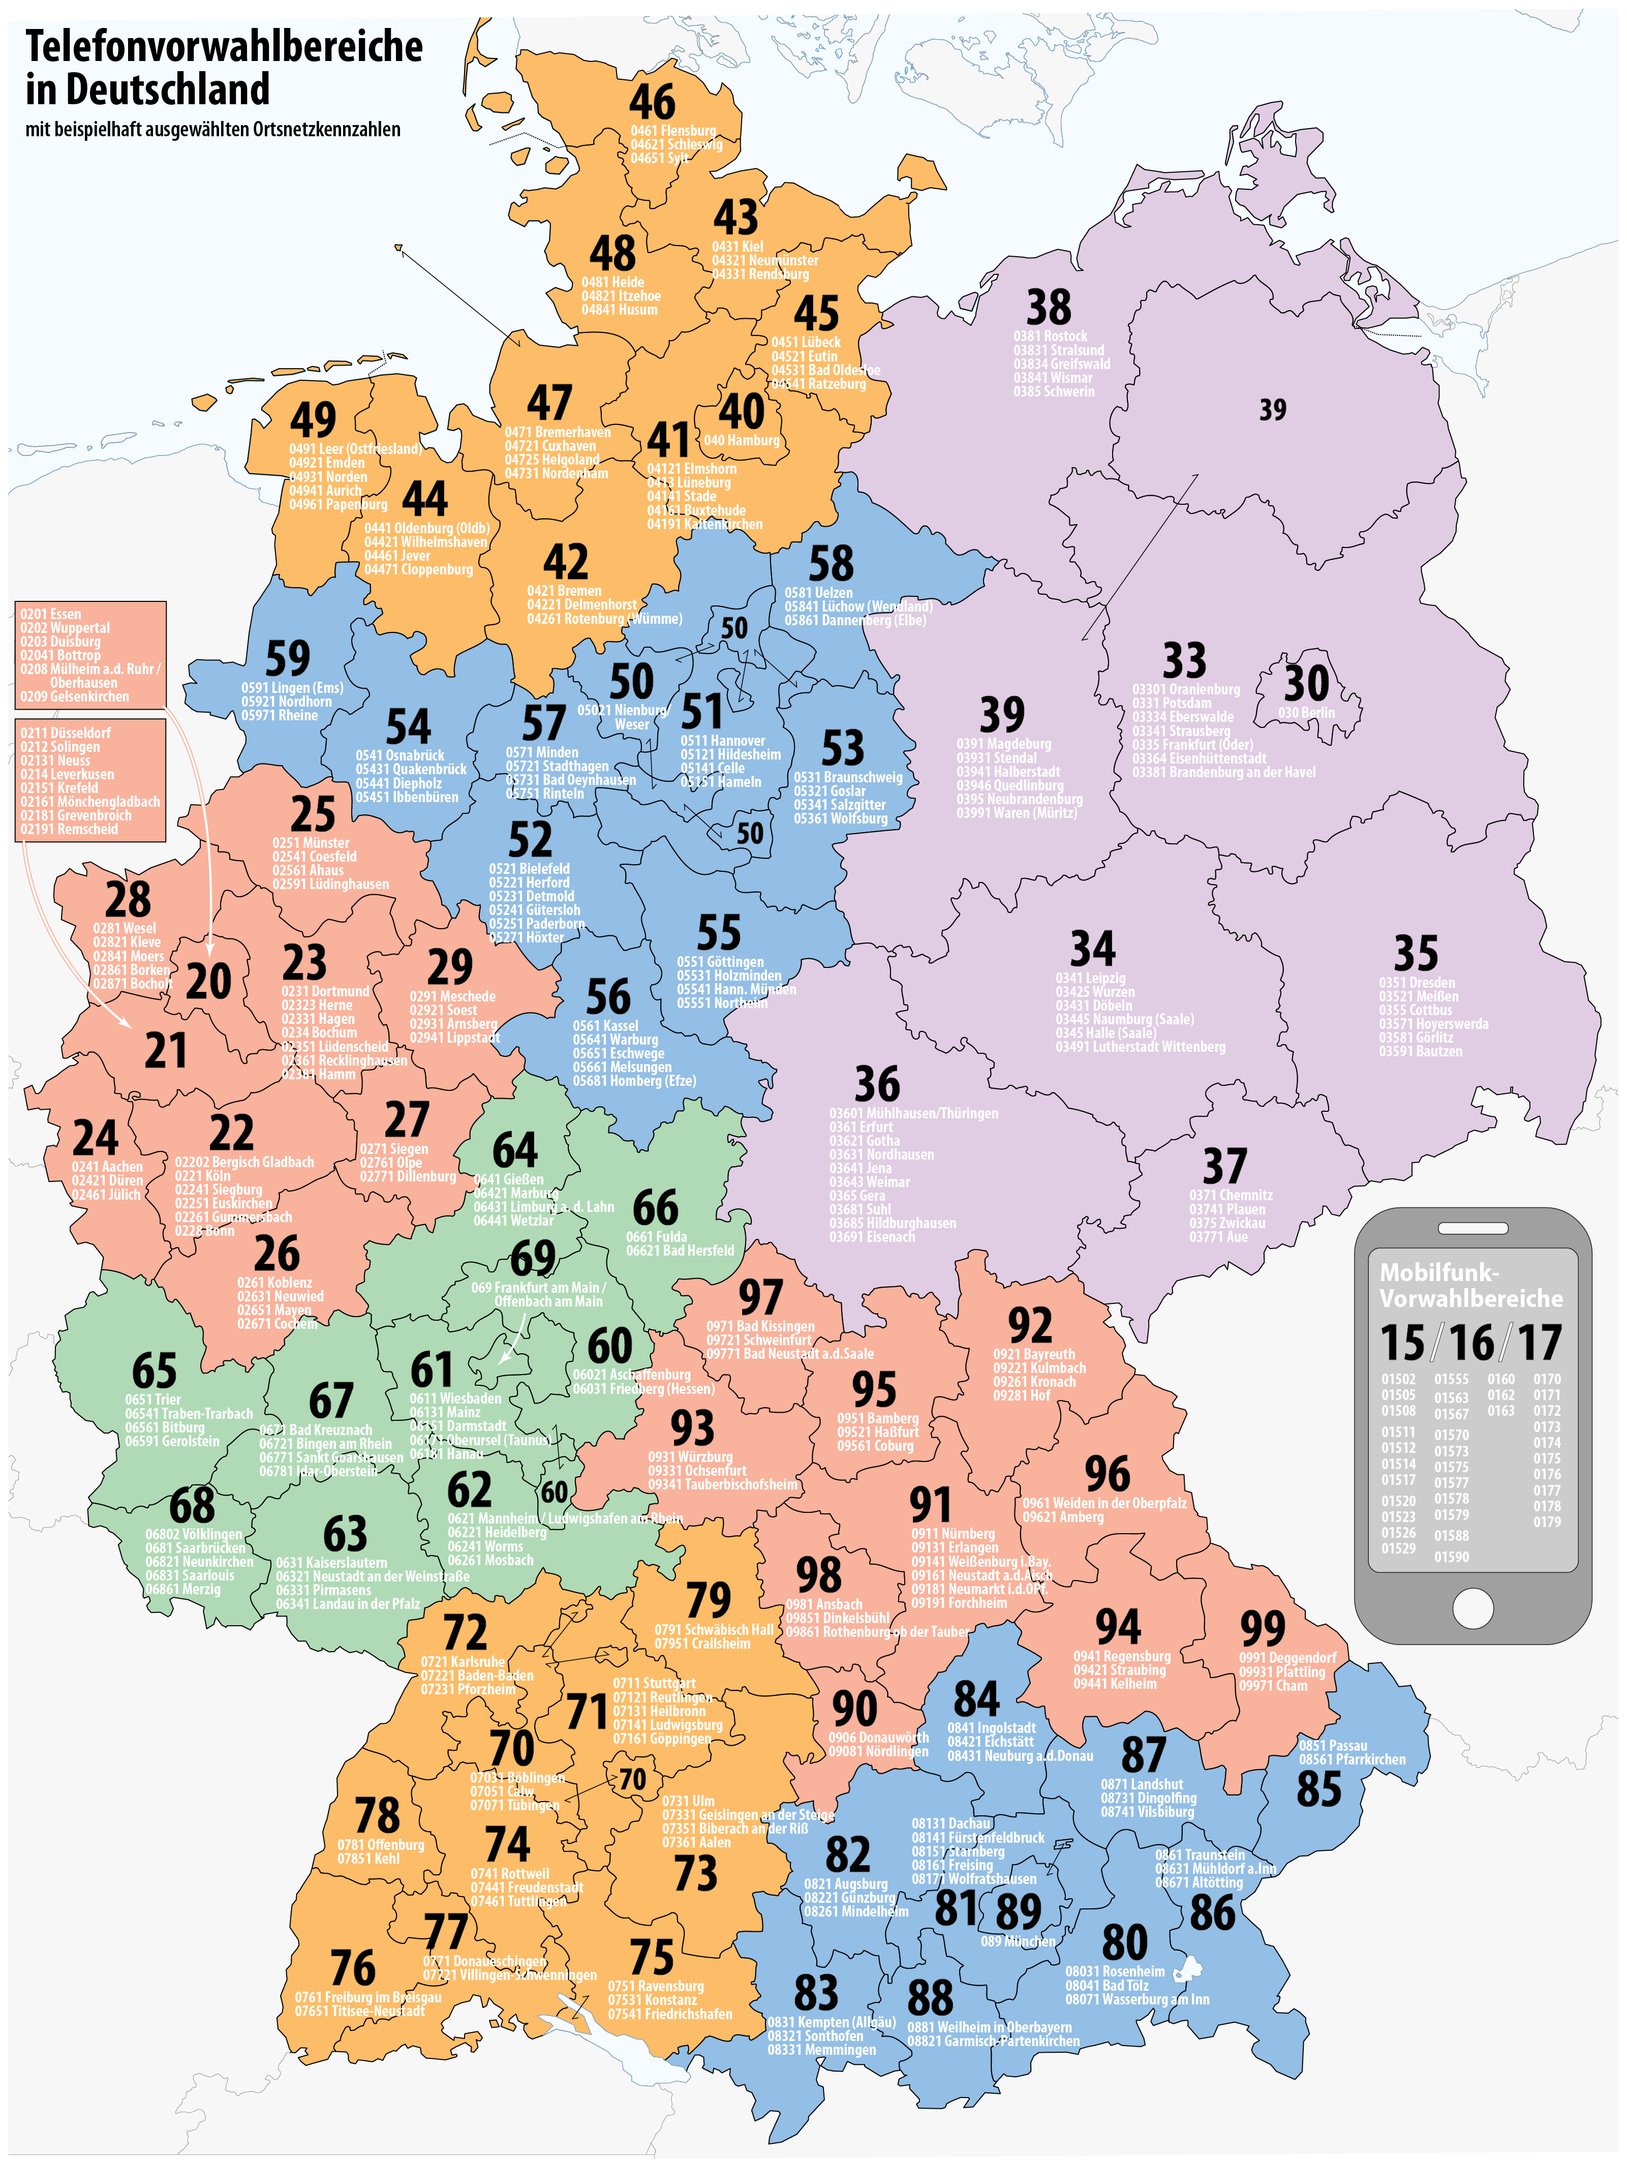 1627px-Karte_Telefonvorwahlen_Deutschland.png